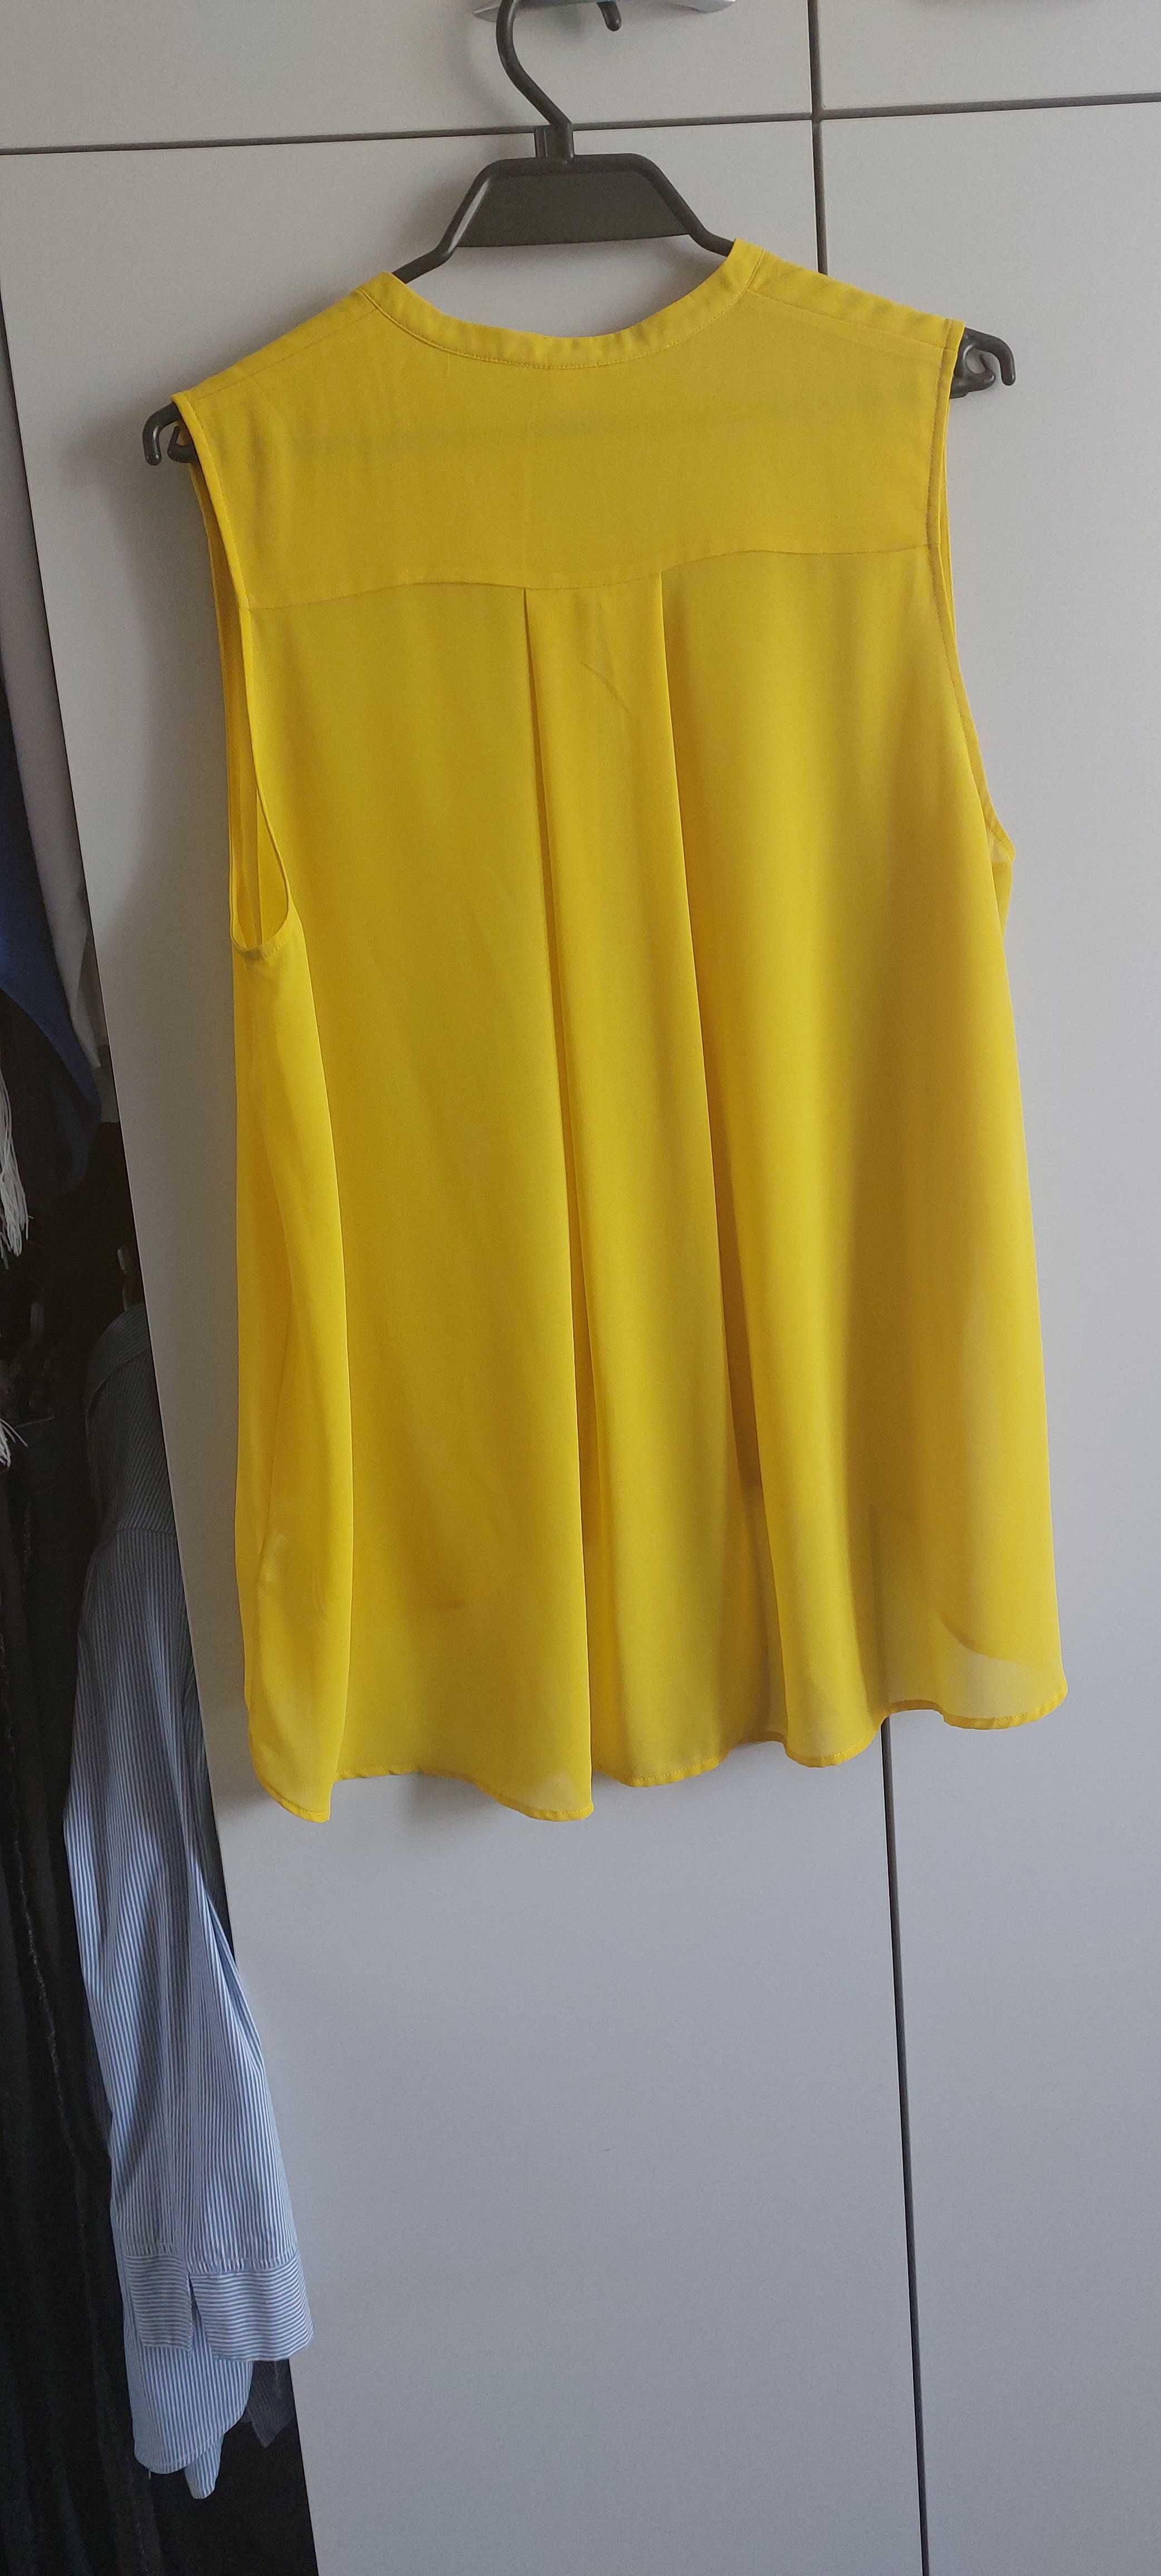 Bluzeczka żółta H&M 44